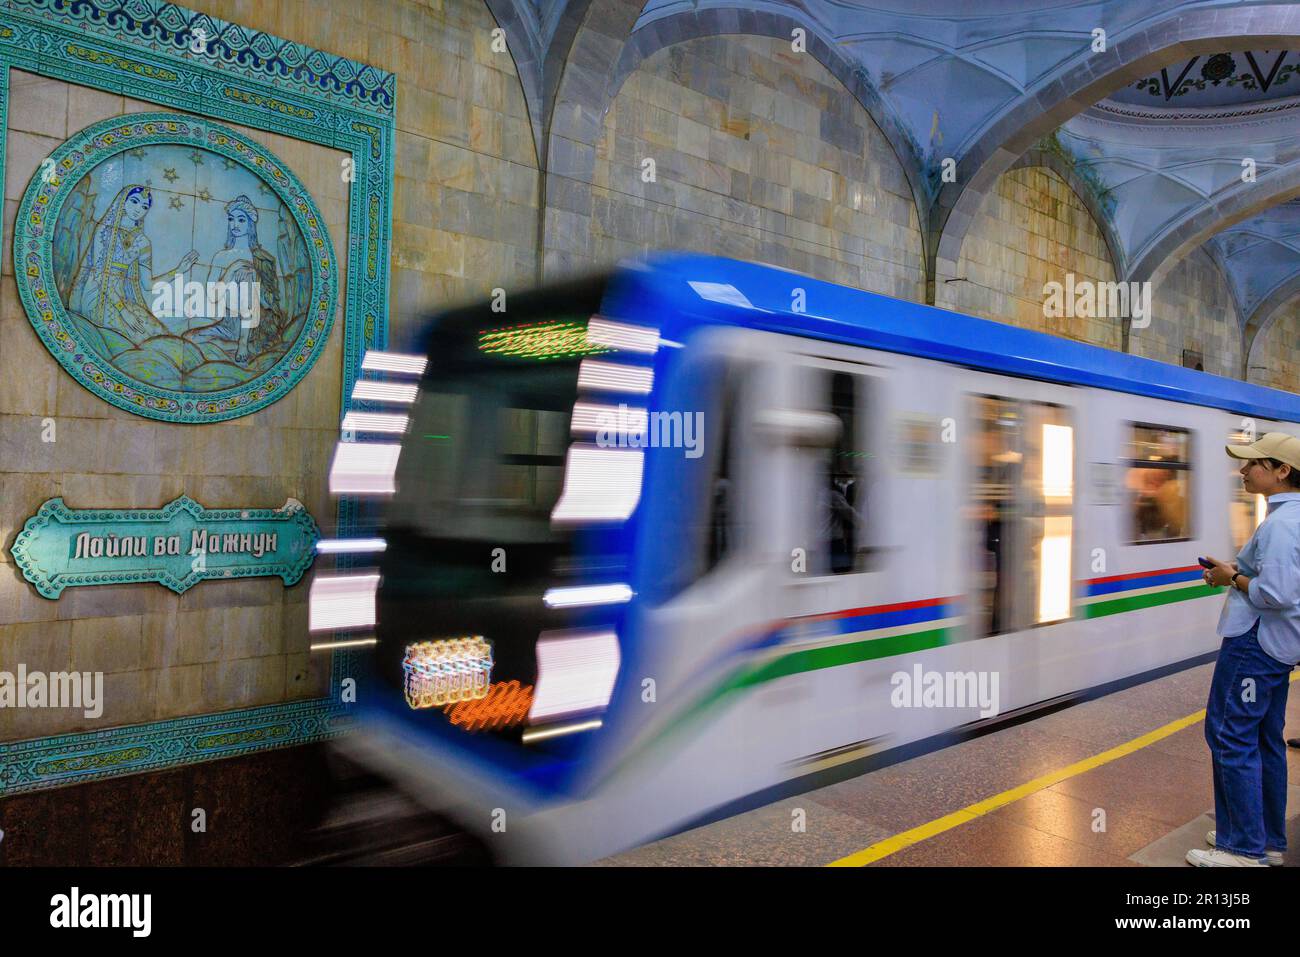 photo à l'obturateur lent du train en mouvement arrivant à la station de métro alisher navoi à tachkent, devant l'un des panneaux représentant l'une de ses histoires Banque D'Images